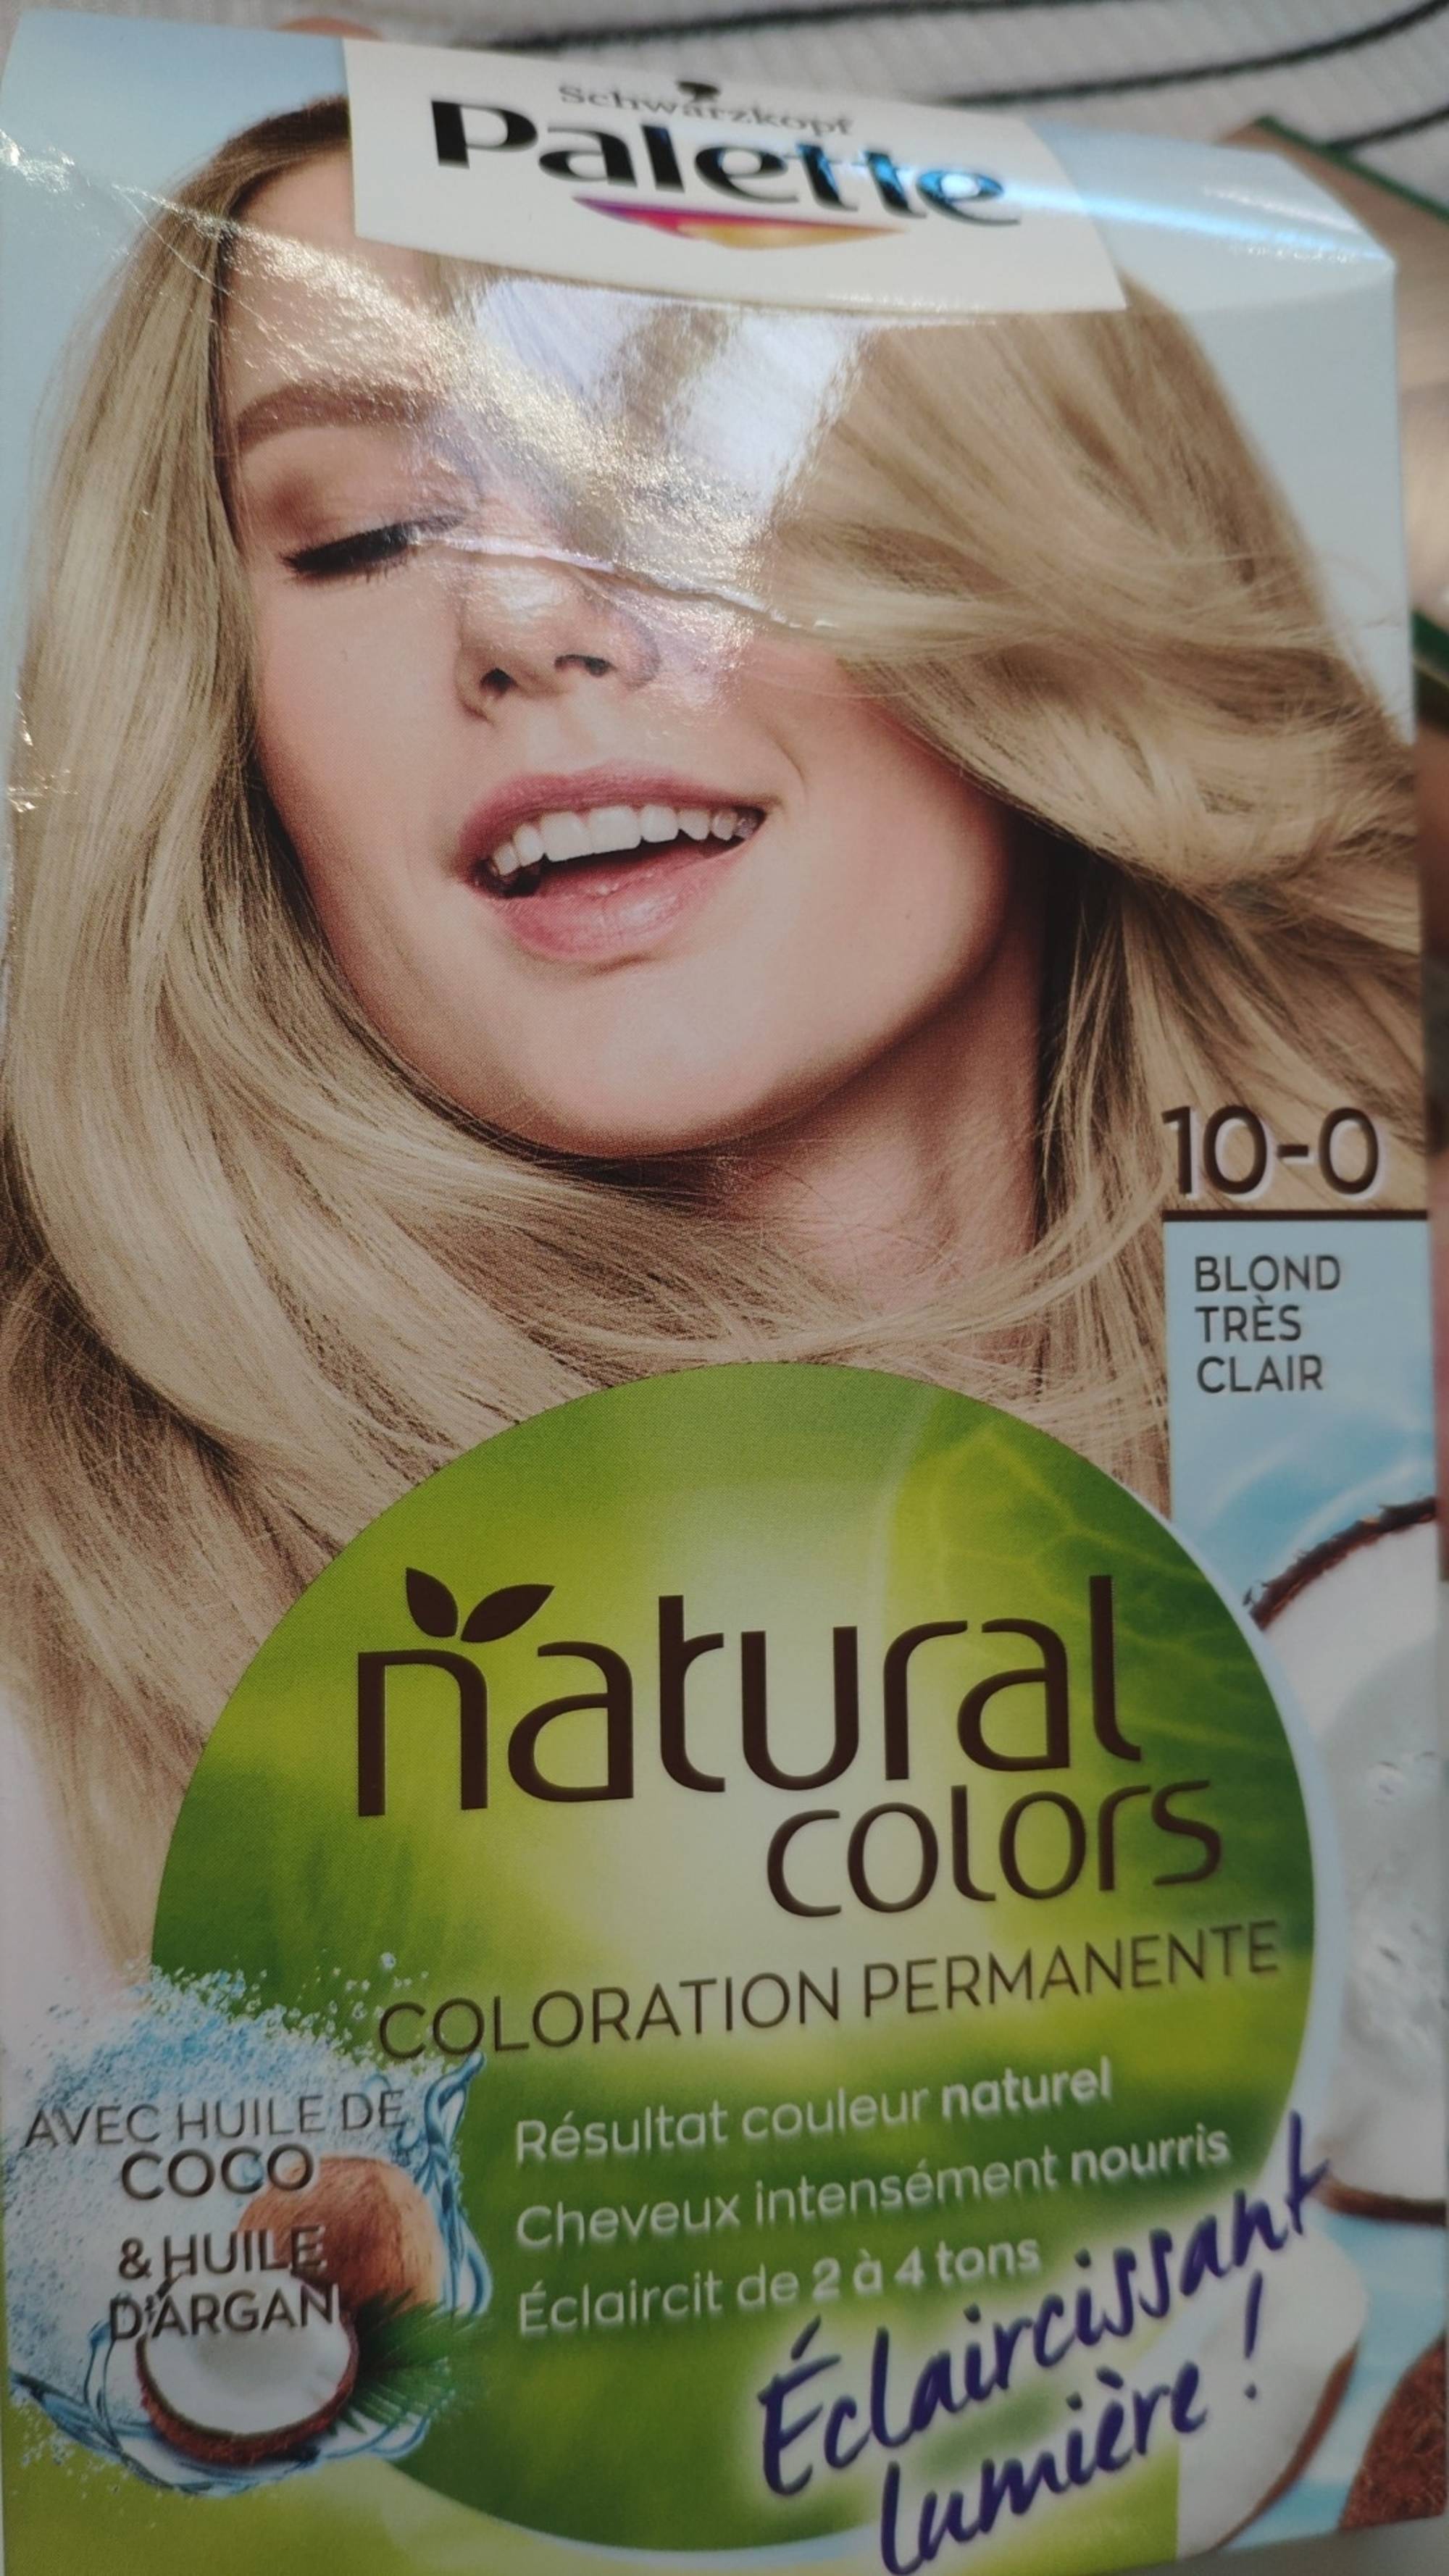 SCHWARZKOPF - Palette natural colors - Coloration permanente 10-0 blond très clair